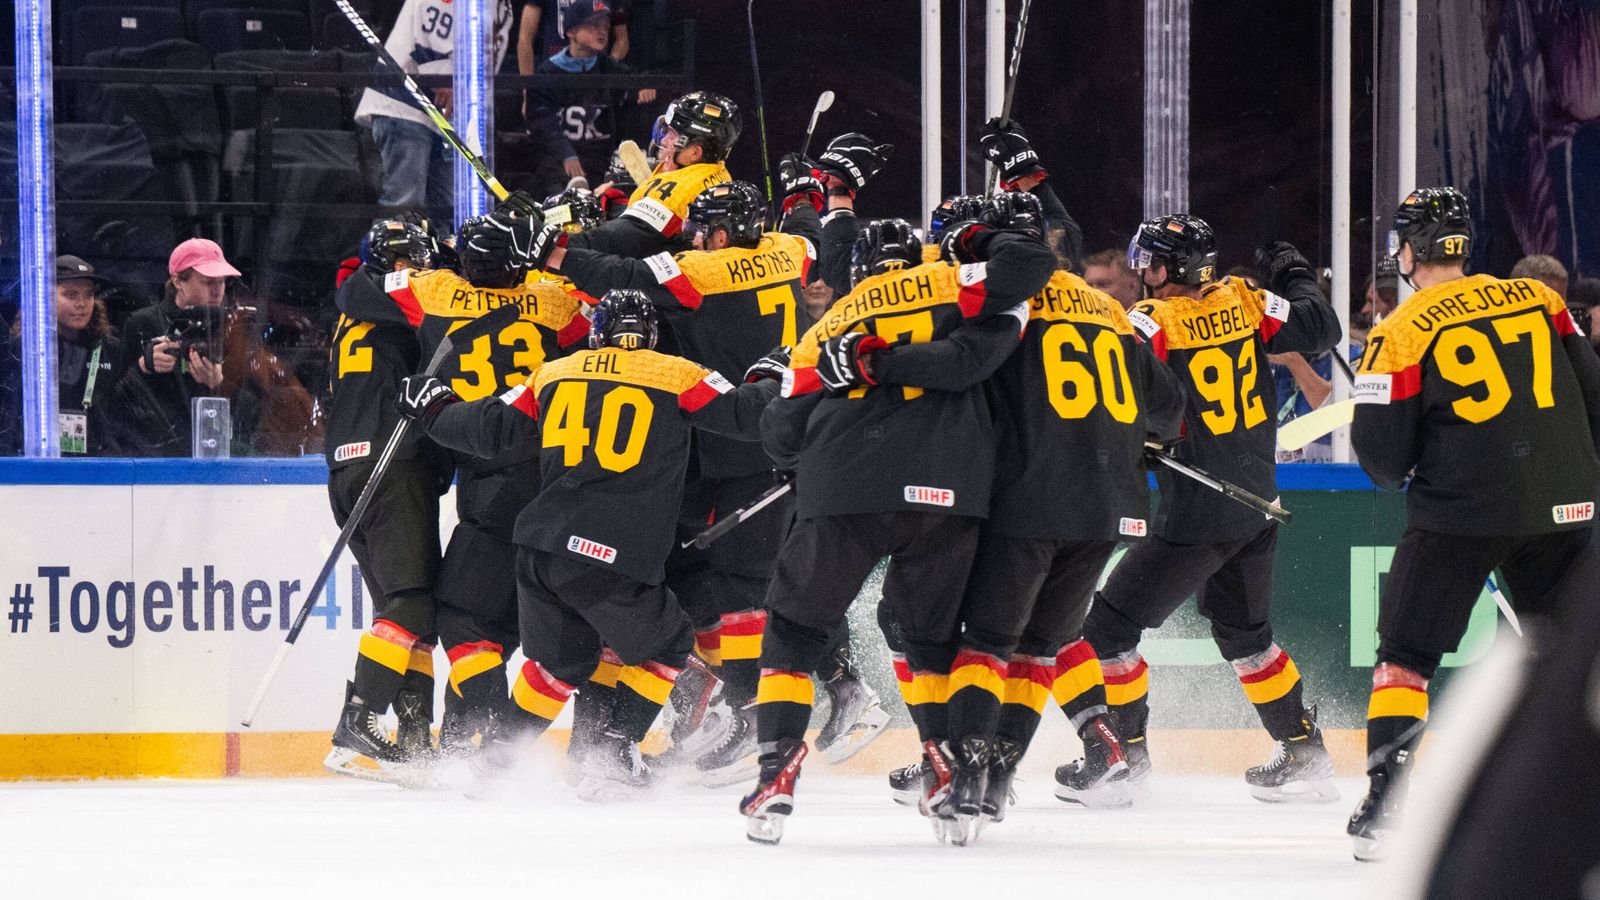 Eishockey-WM Chancen für Deutschland im Finale gegen Kanada Eishockey News Sky Sport